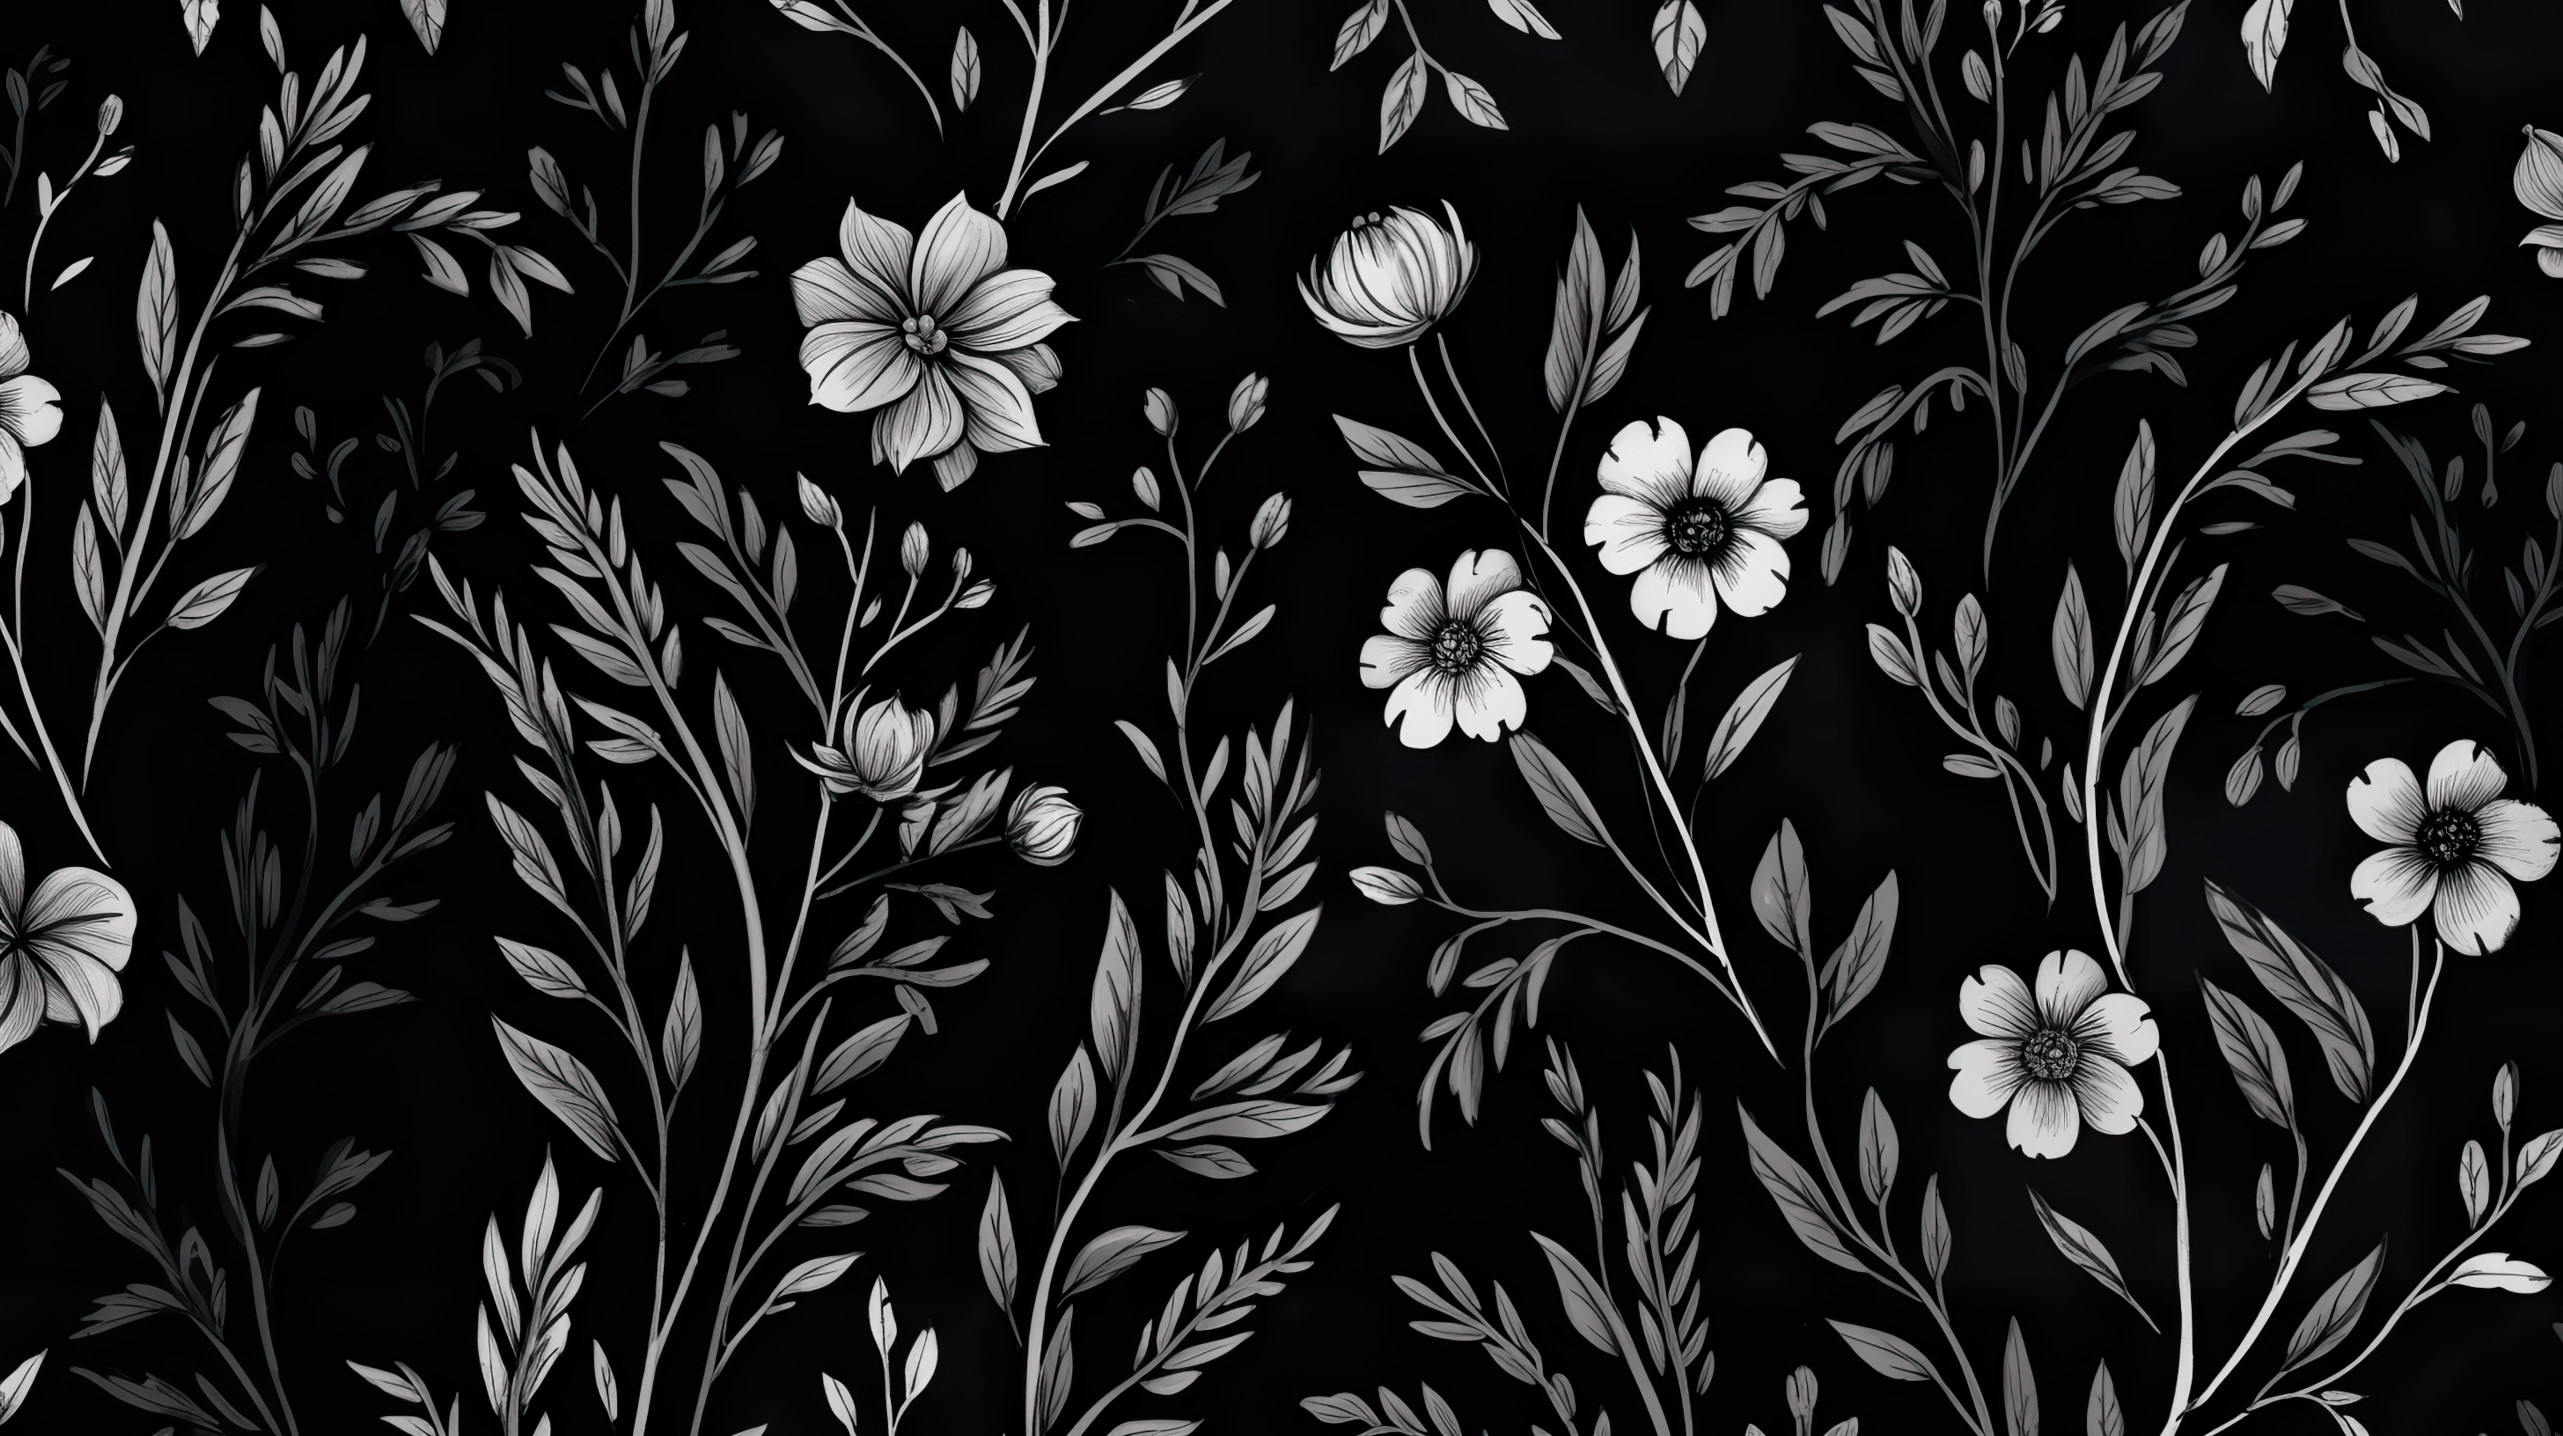 Black Aesthetic Wallpaper